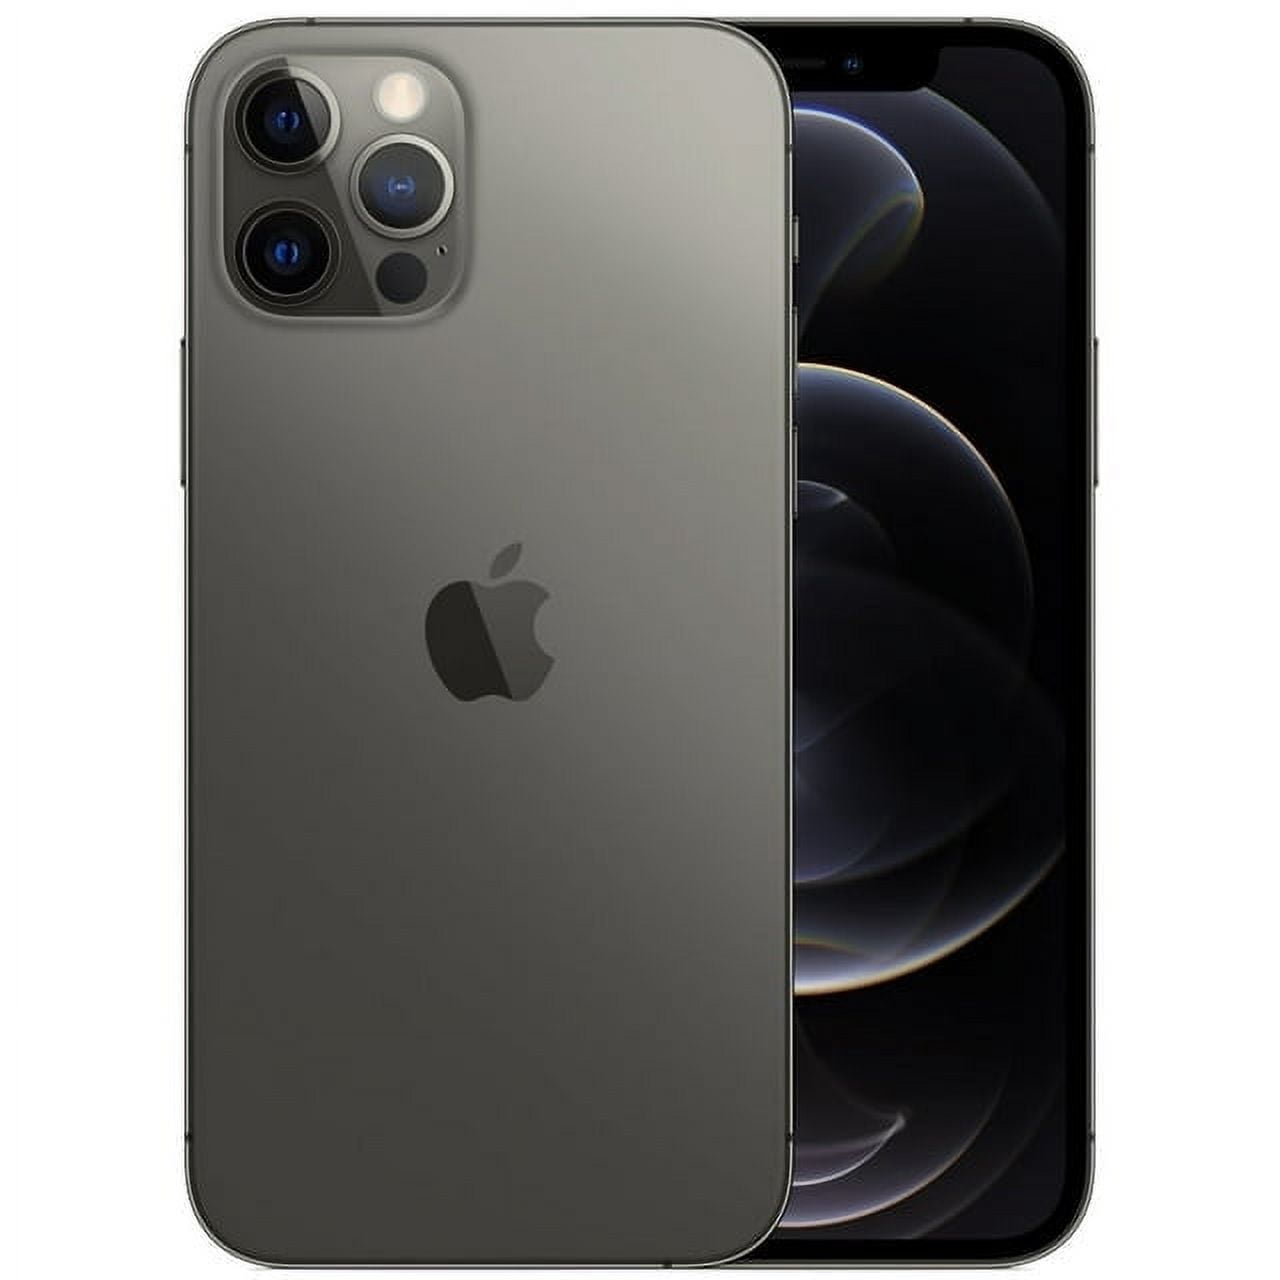 451,33 € - Apple Iphone Xs Space Grey Reacondicionado